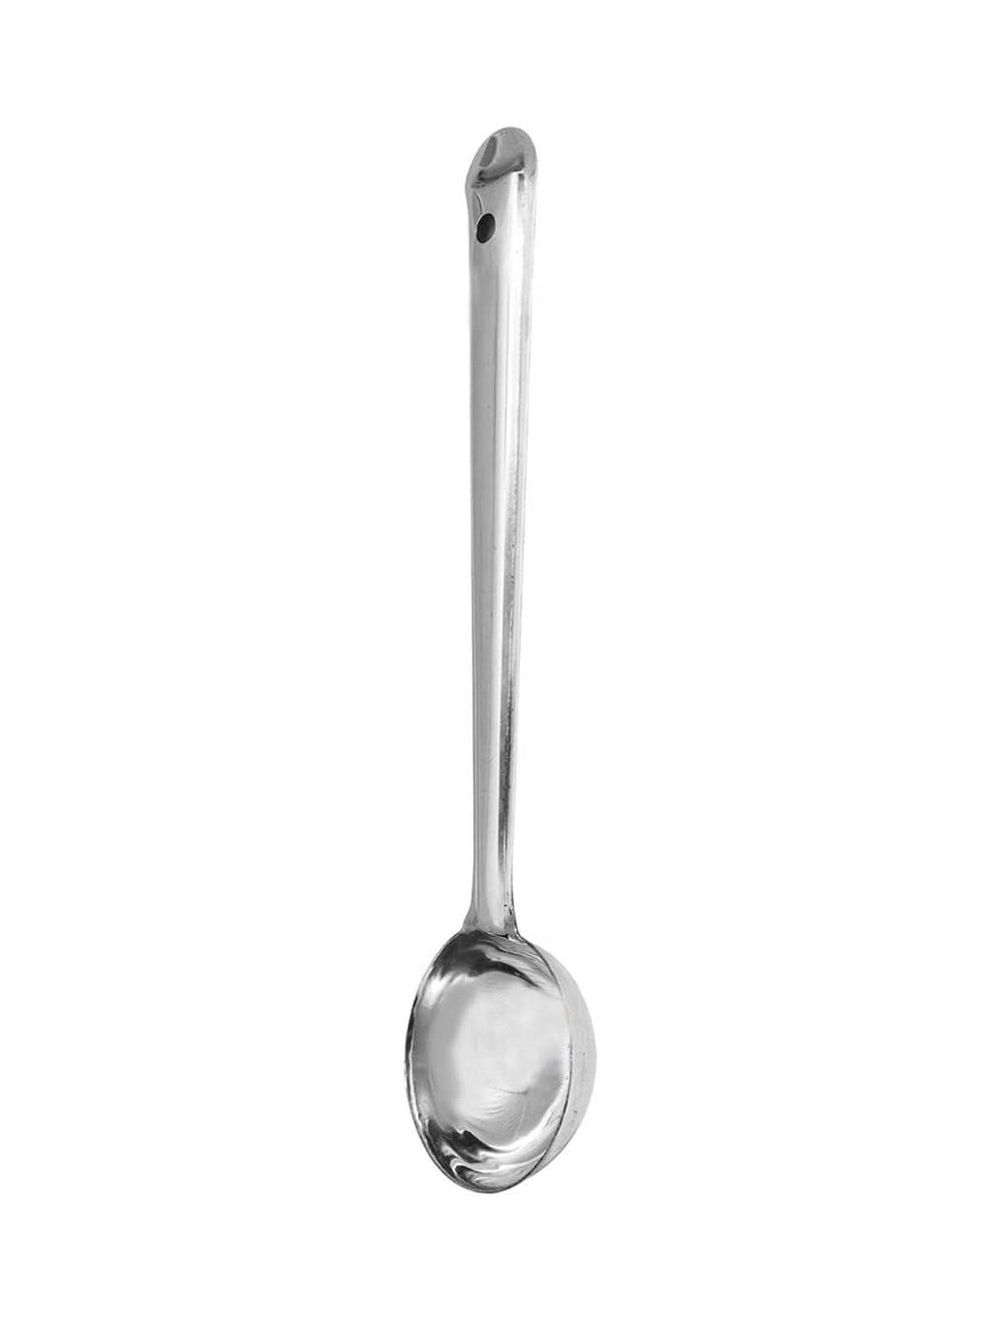 Raj 8 cm Flare Laddle Spoon-FL0006,Silver